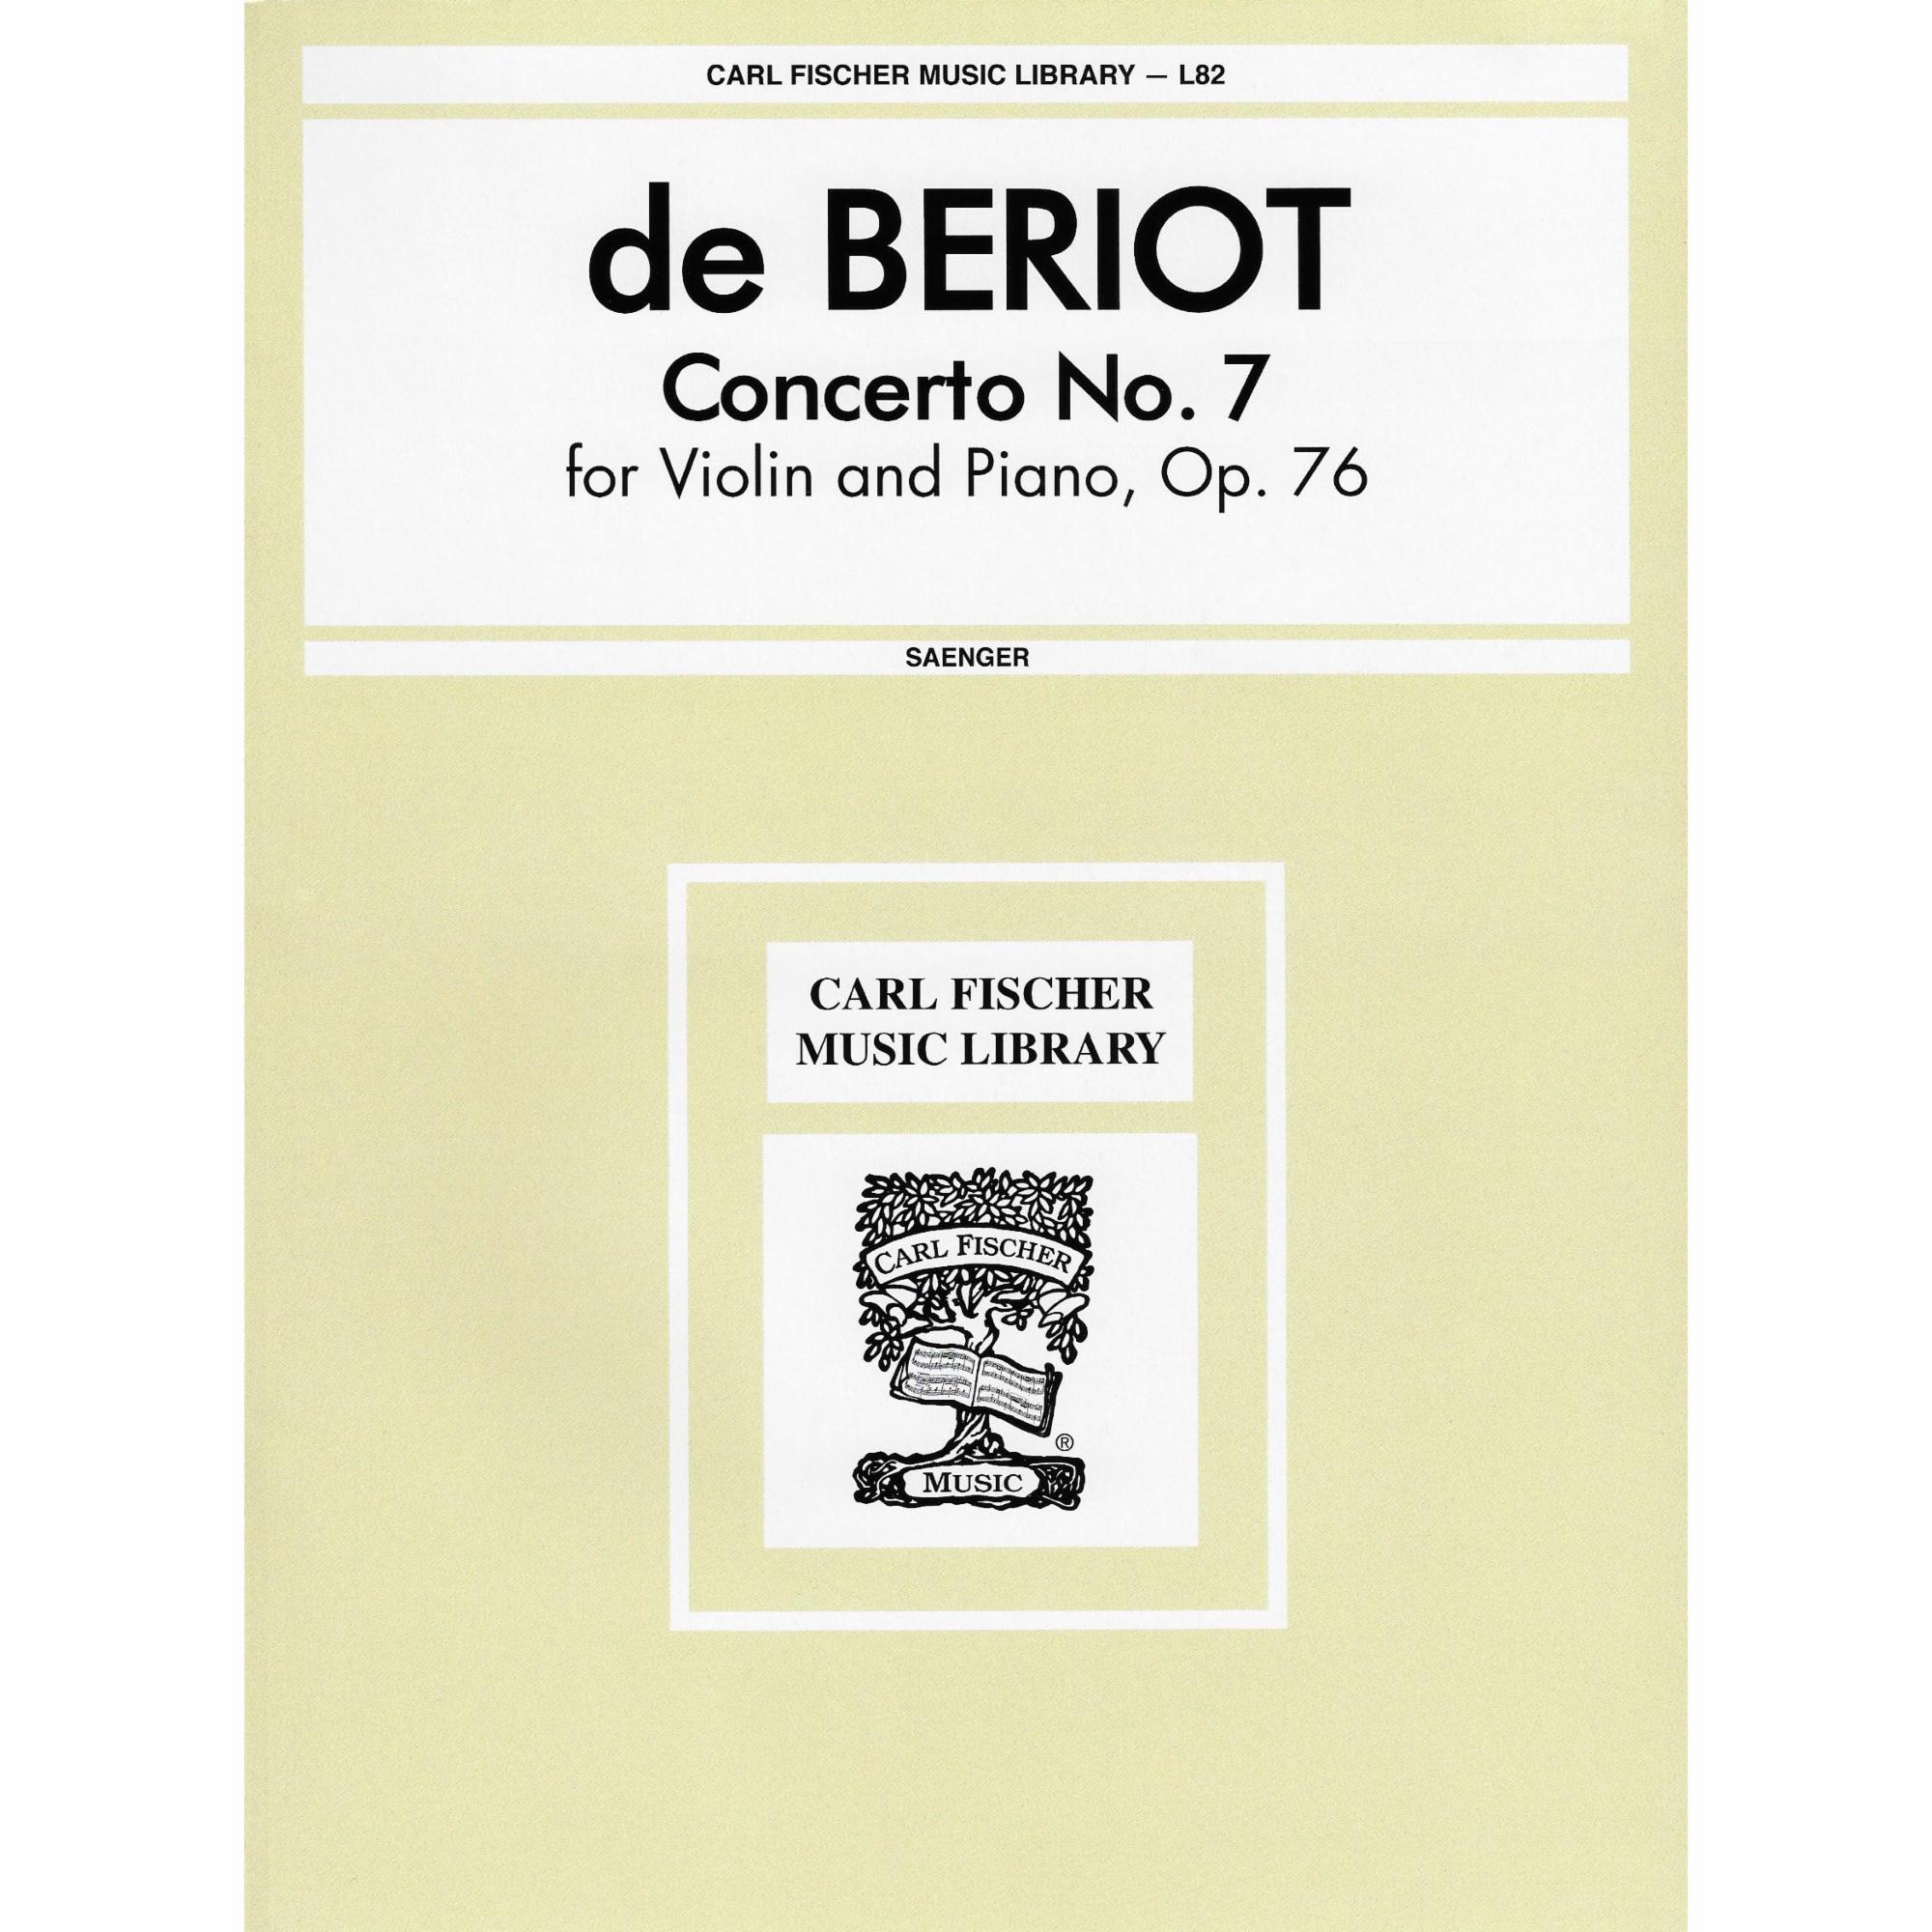 Beriot -- Violin Concerto No. 7, Op. 76 for Violin and Piano